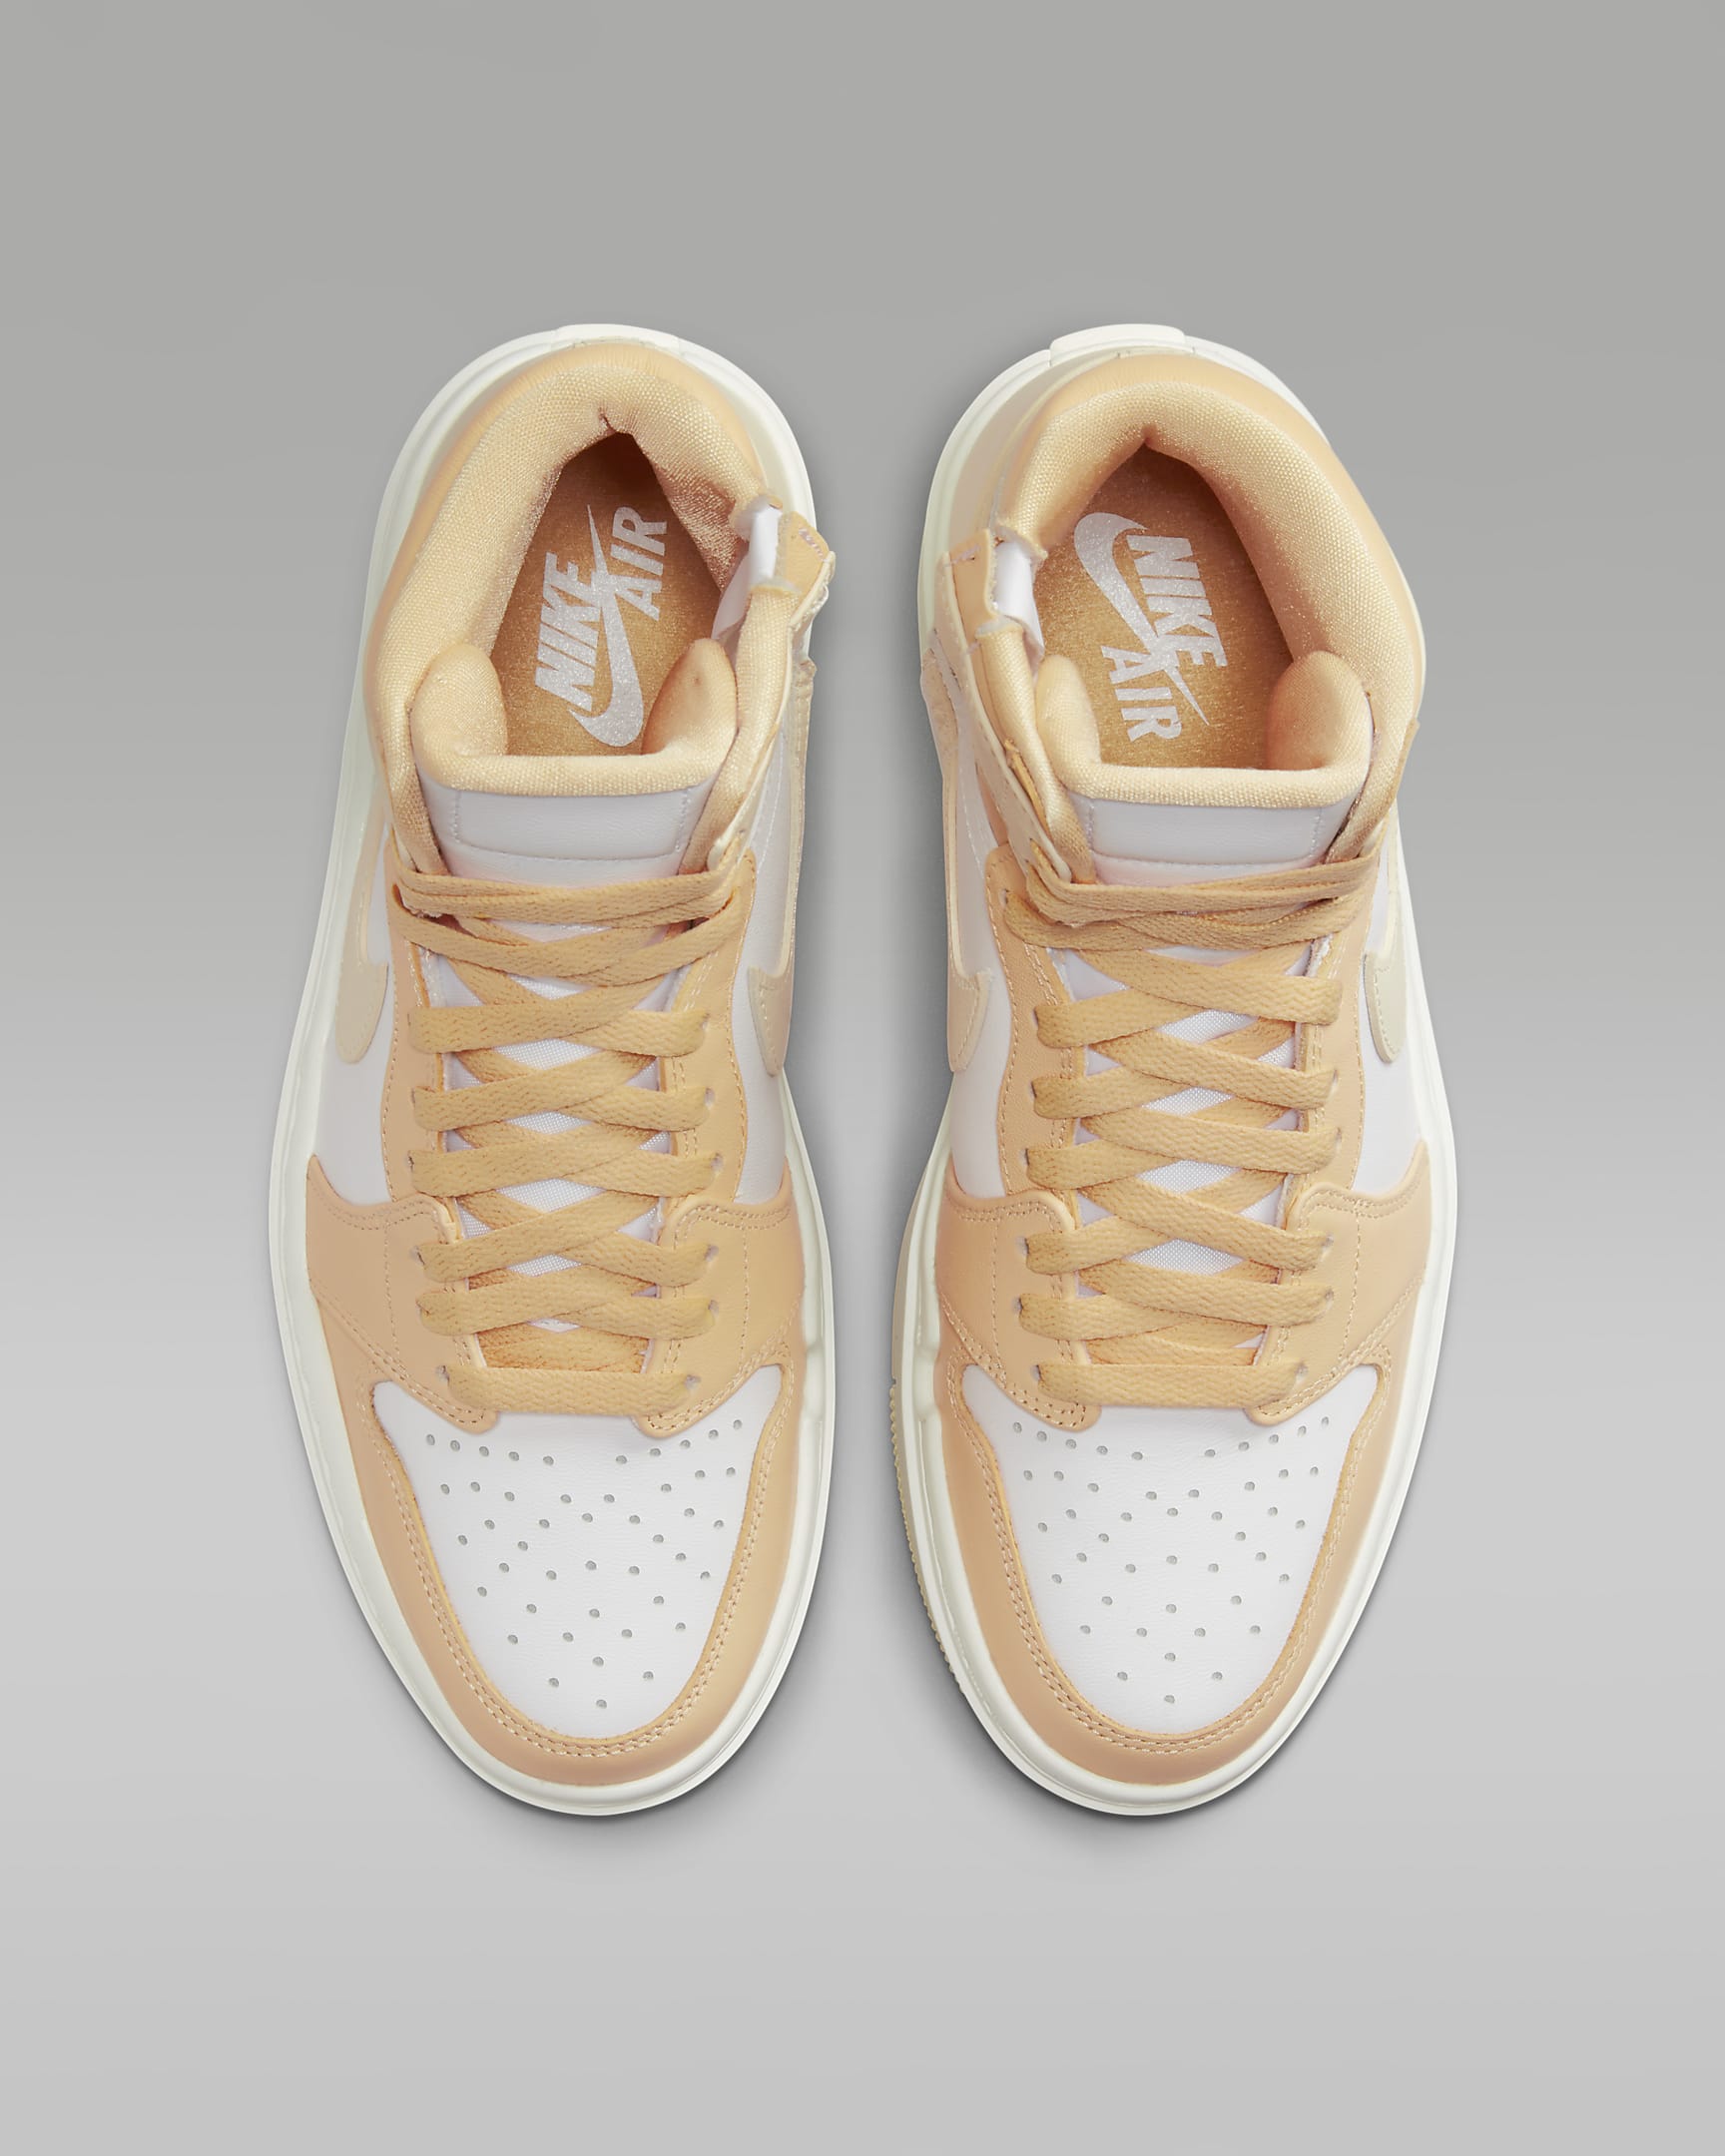 Air Jordan 1 Elevate High Women's Shoes - Celestial Gold/White/Sail/Muslin